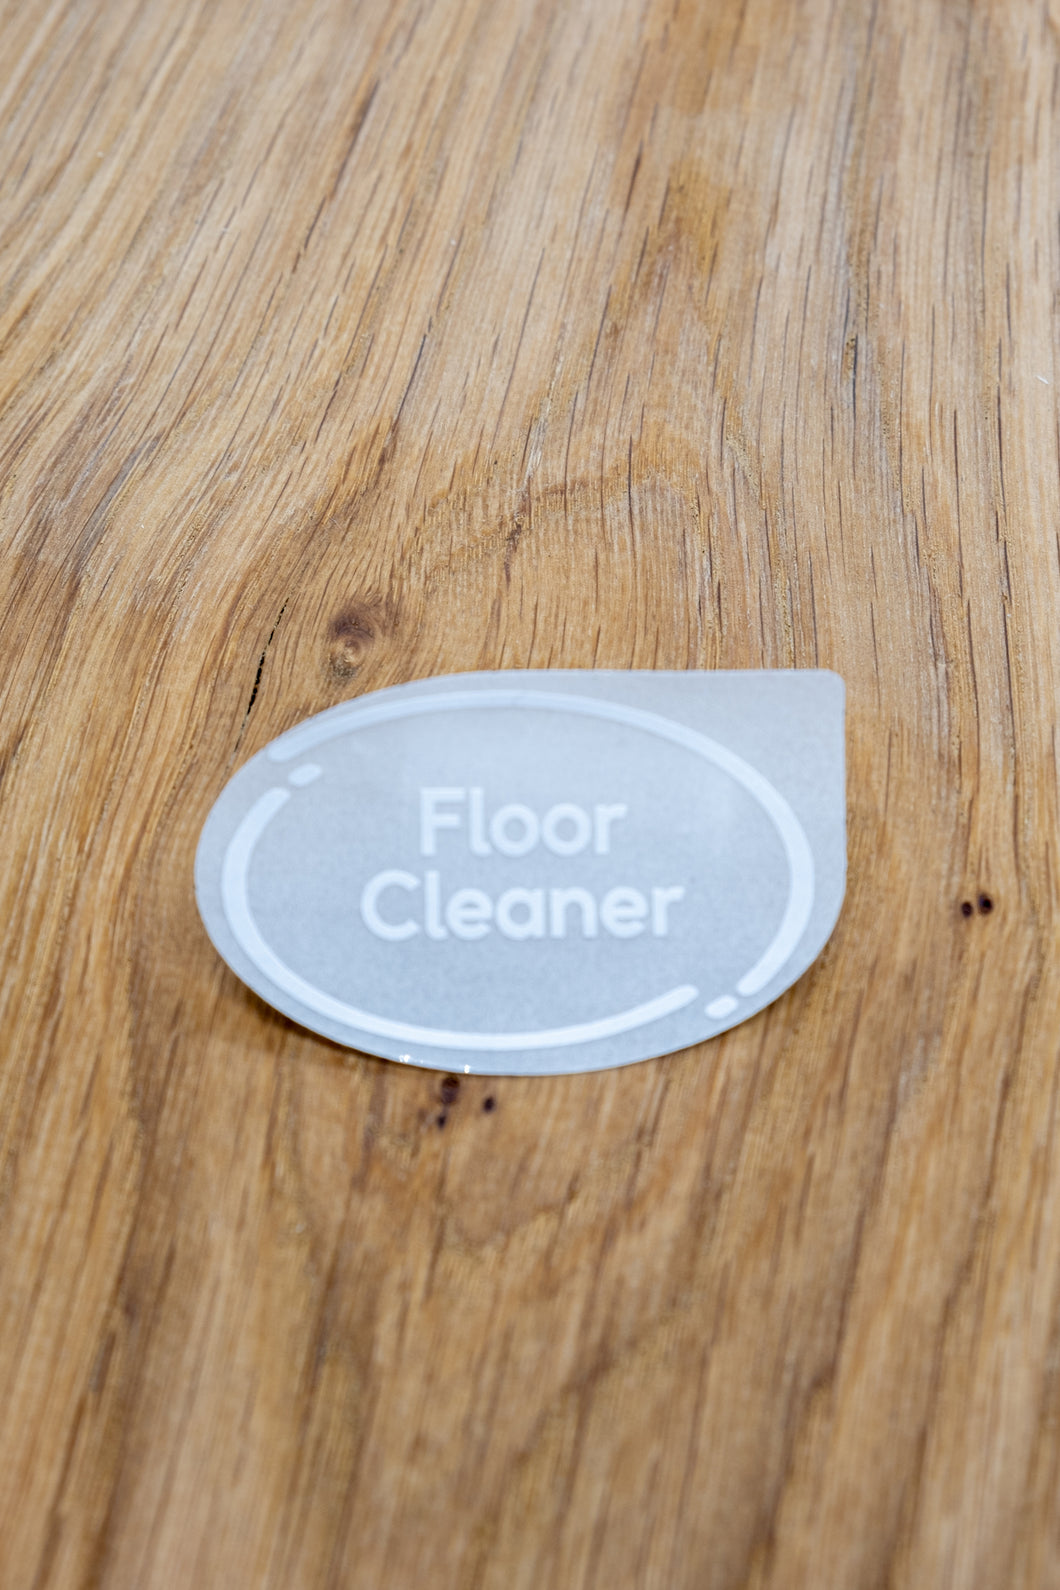 Floor Cleaner Label